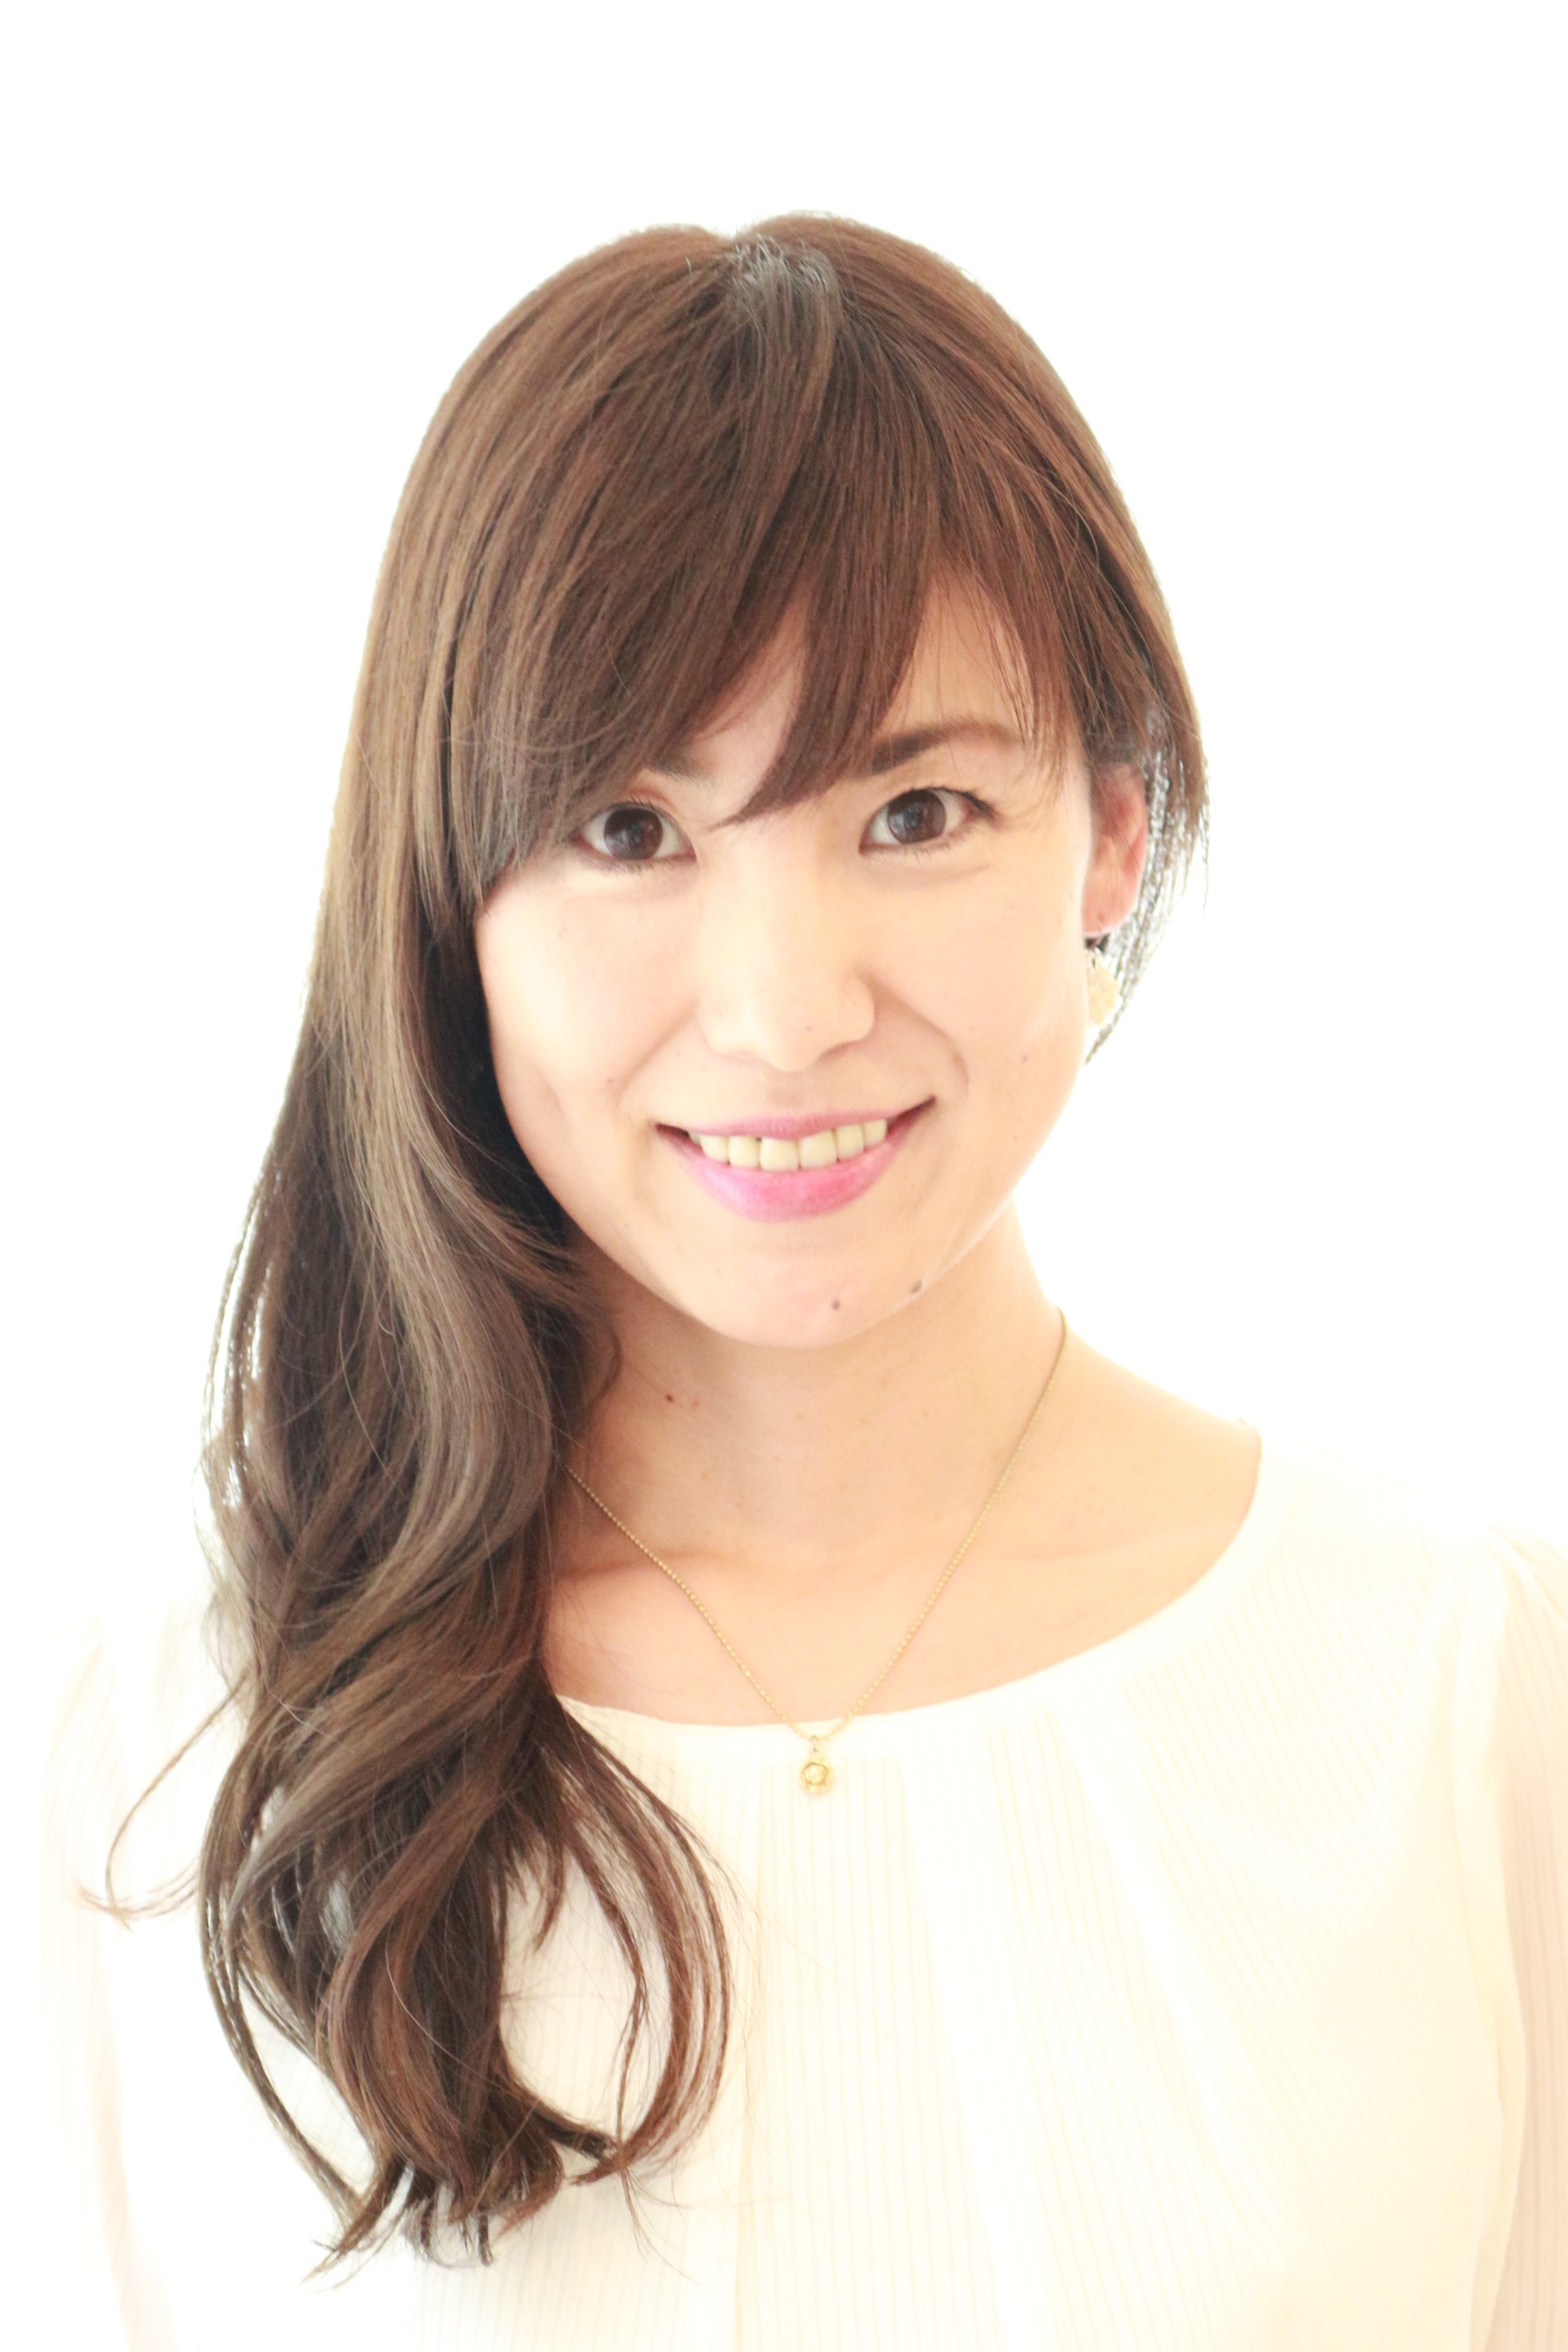 Profile photo for Haruka Suzuki